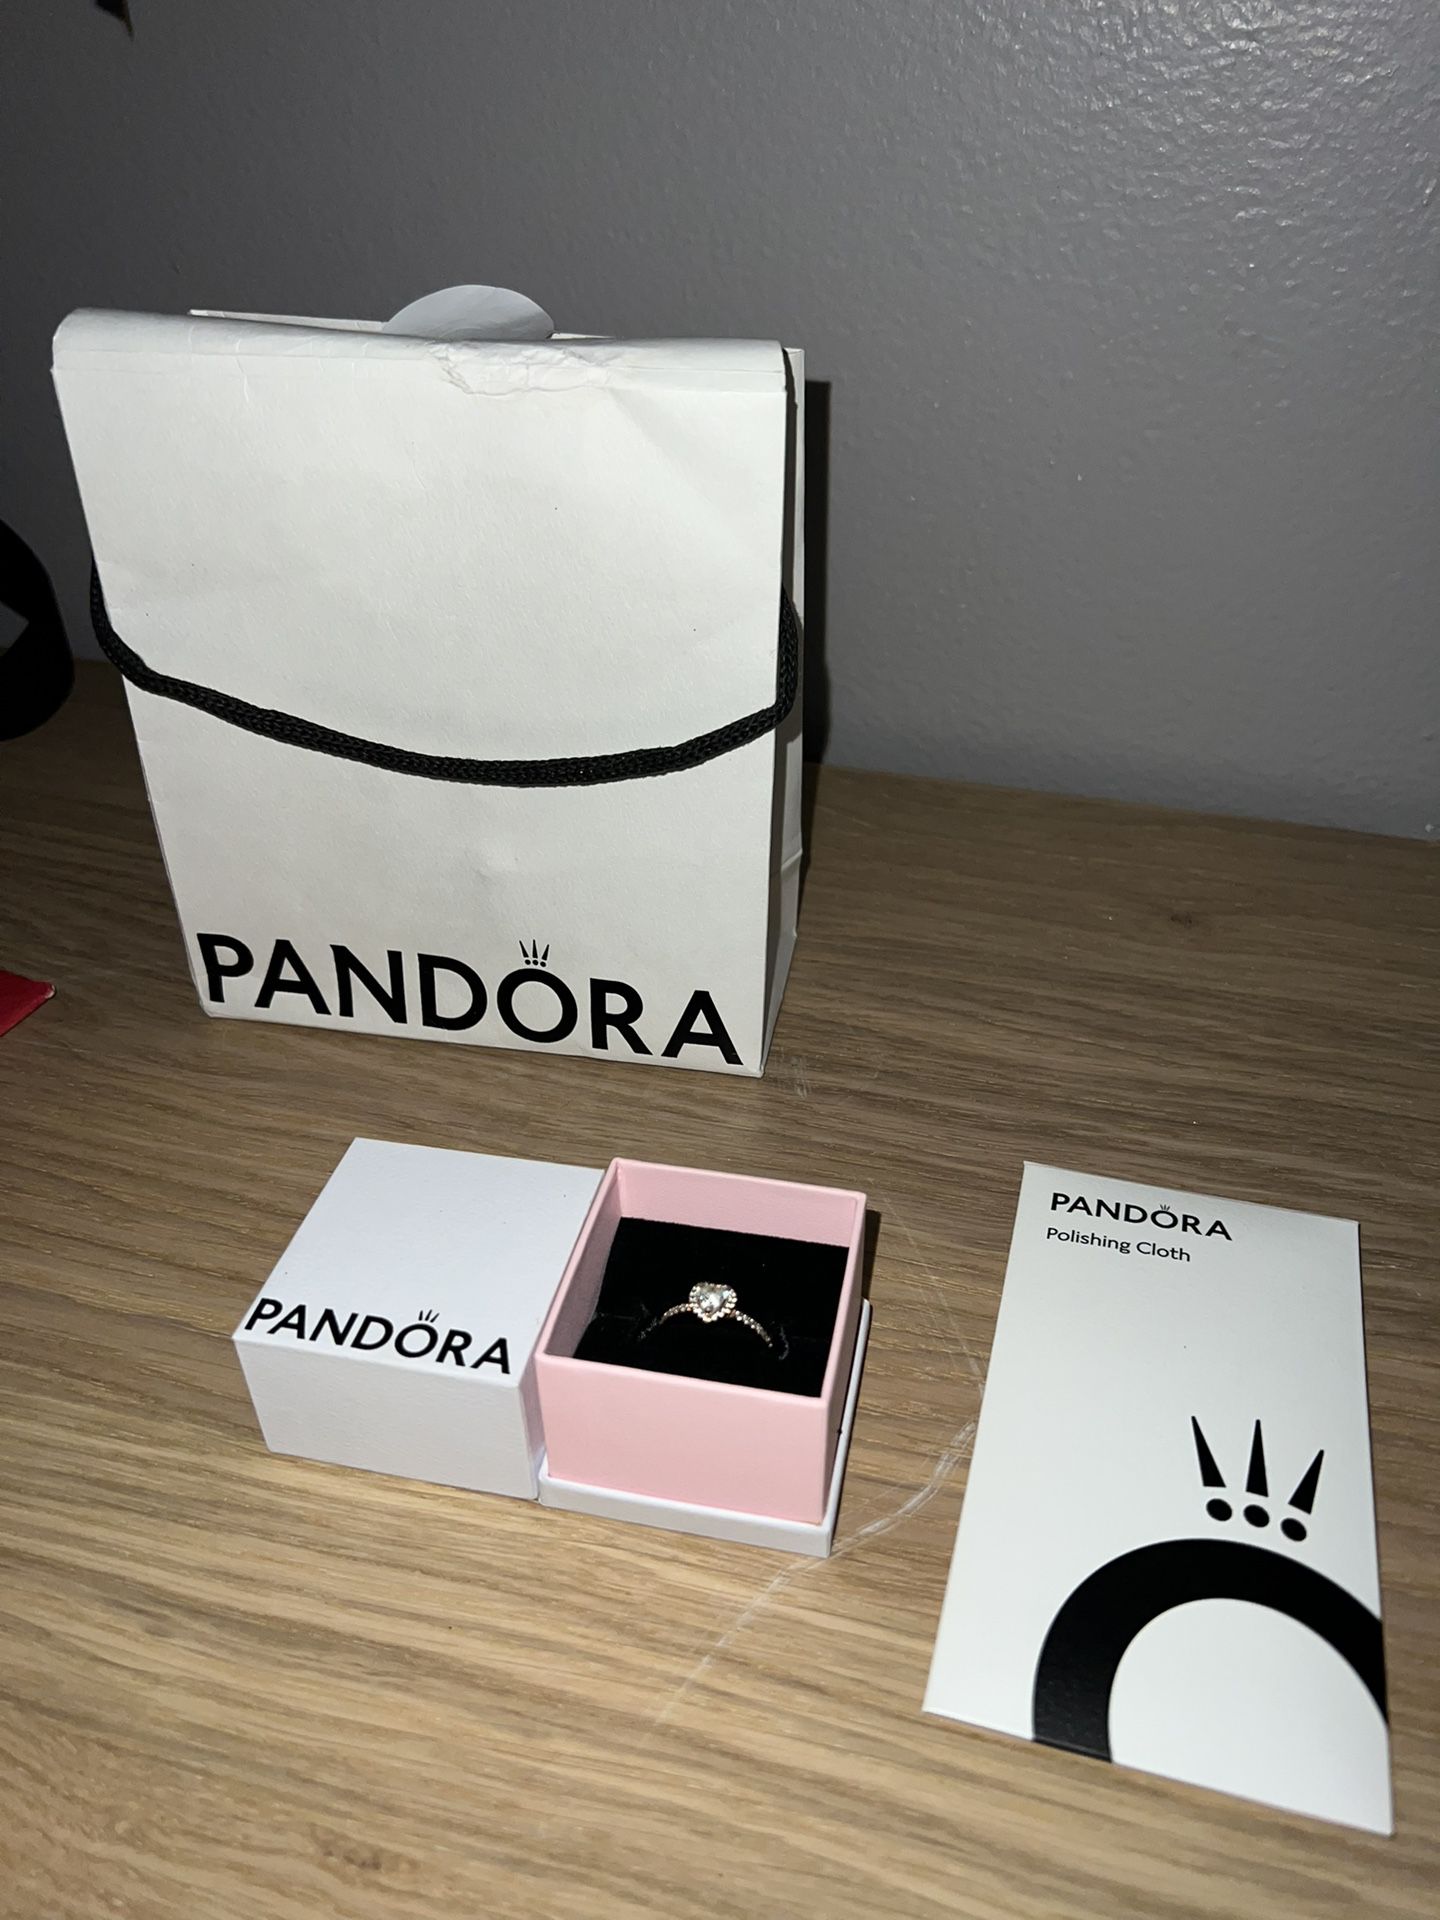 Rose Gold Pandora Ring (Size 6.5)